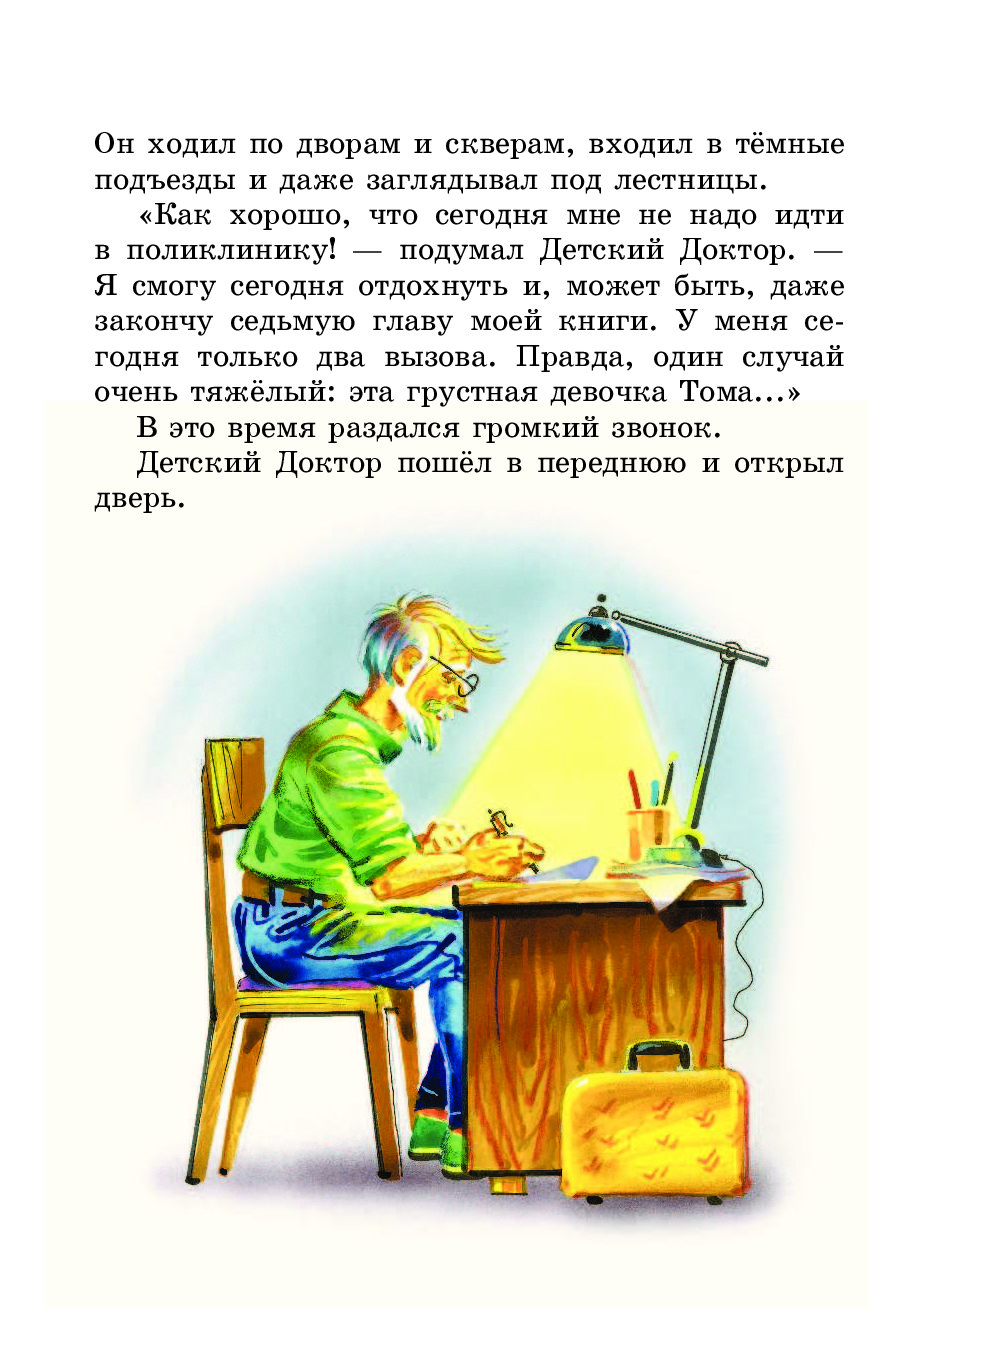 Иллюстрация к книге желтый чемоданчик